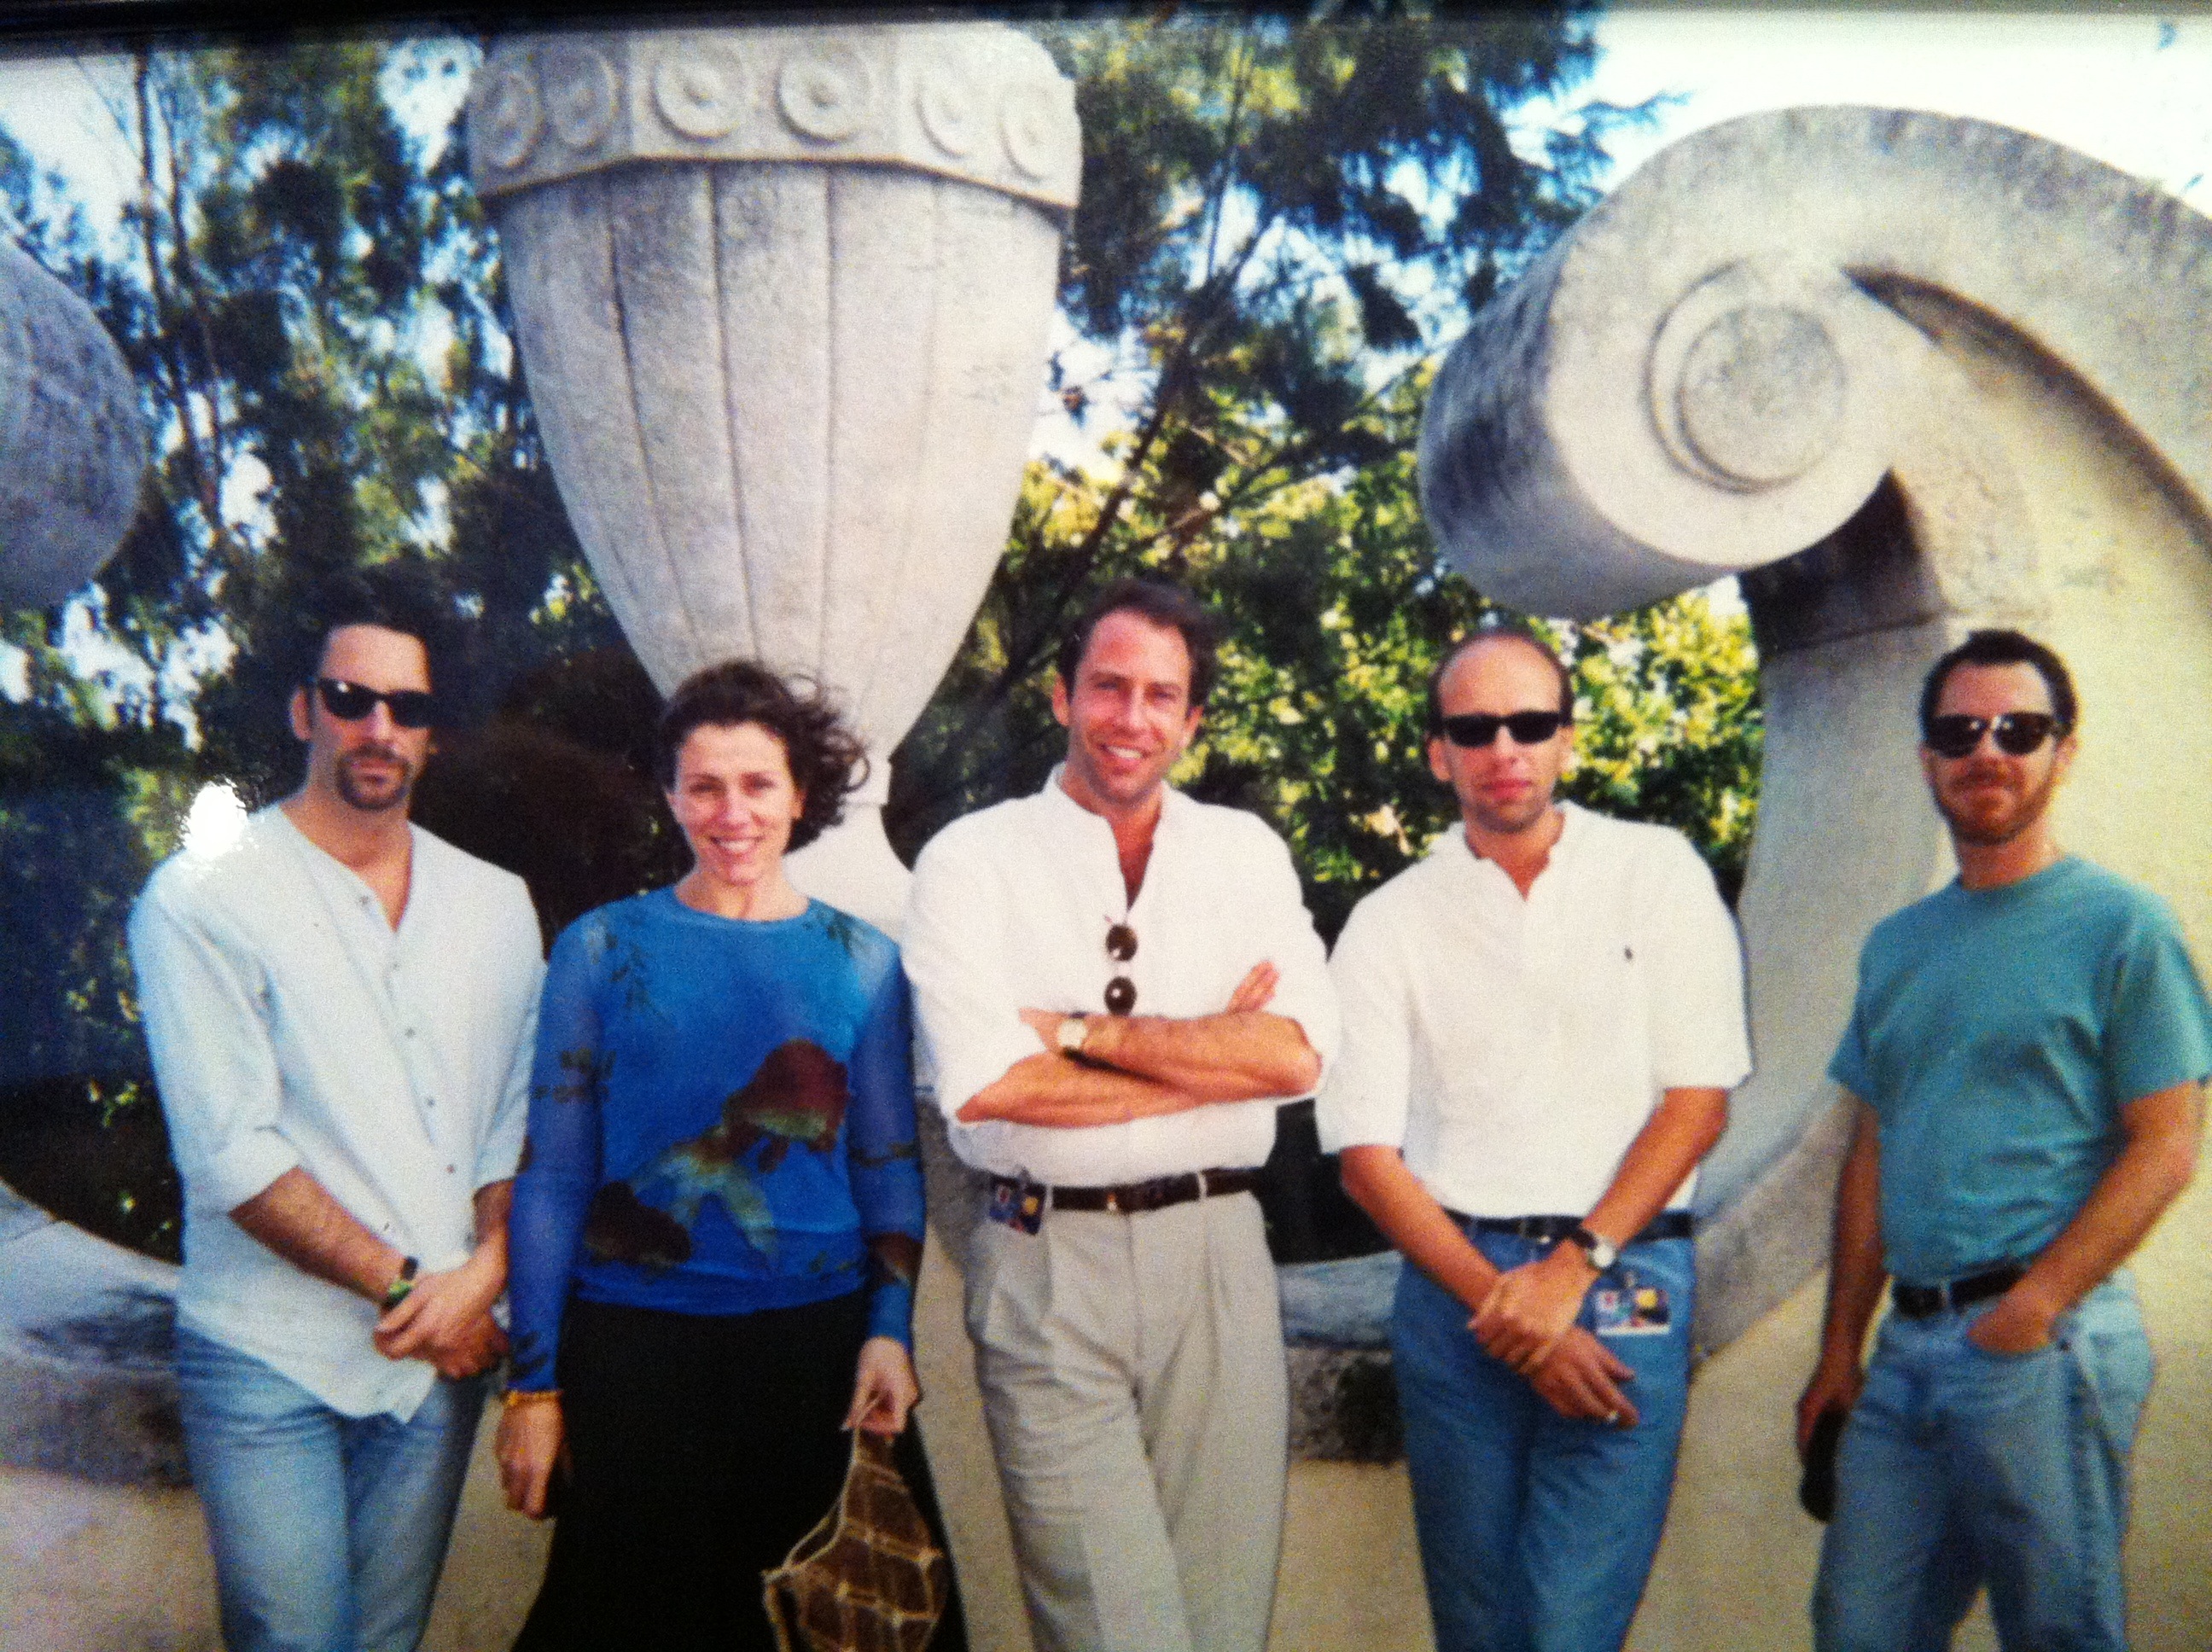 Joel Coen, Frances McDormand, Henri Kessler, Eric Fellner & Ethan Coen at The National Hotel in Havana for Havana Film Festival 1999